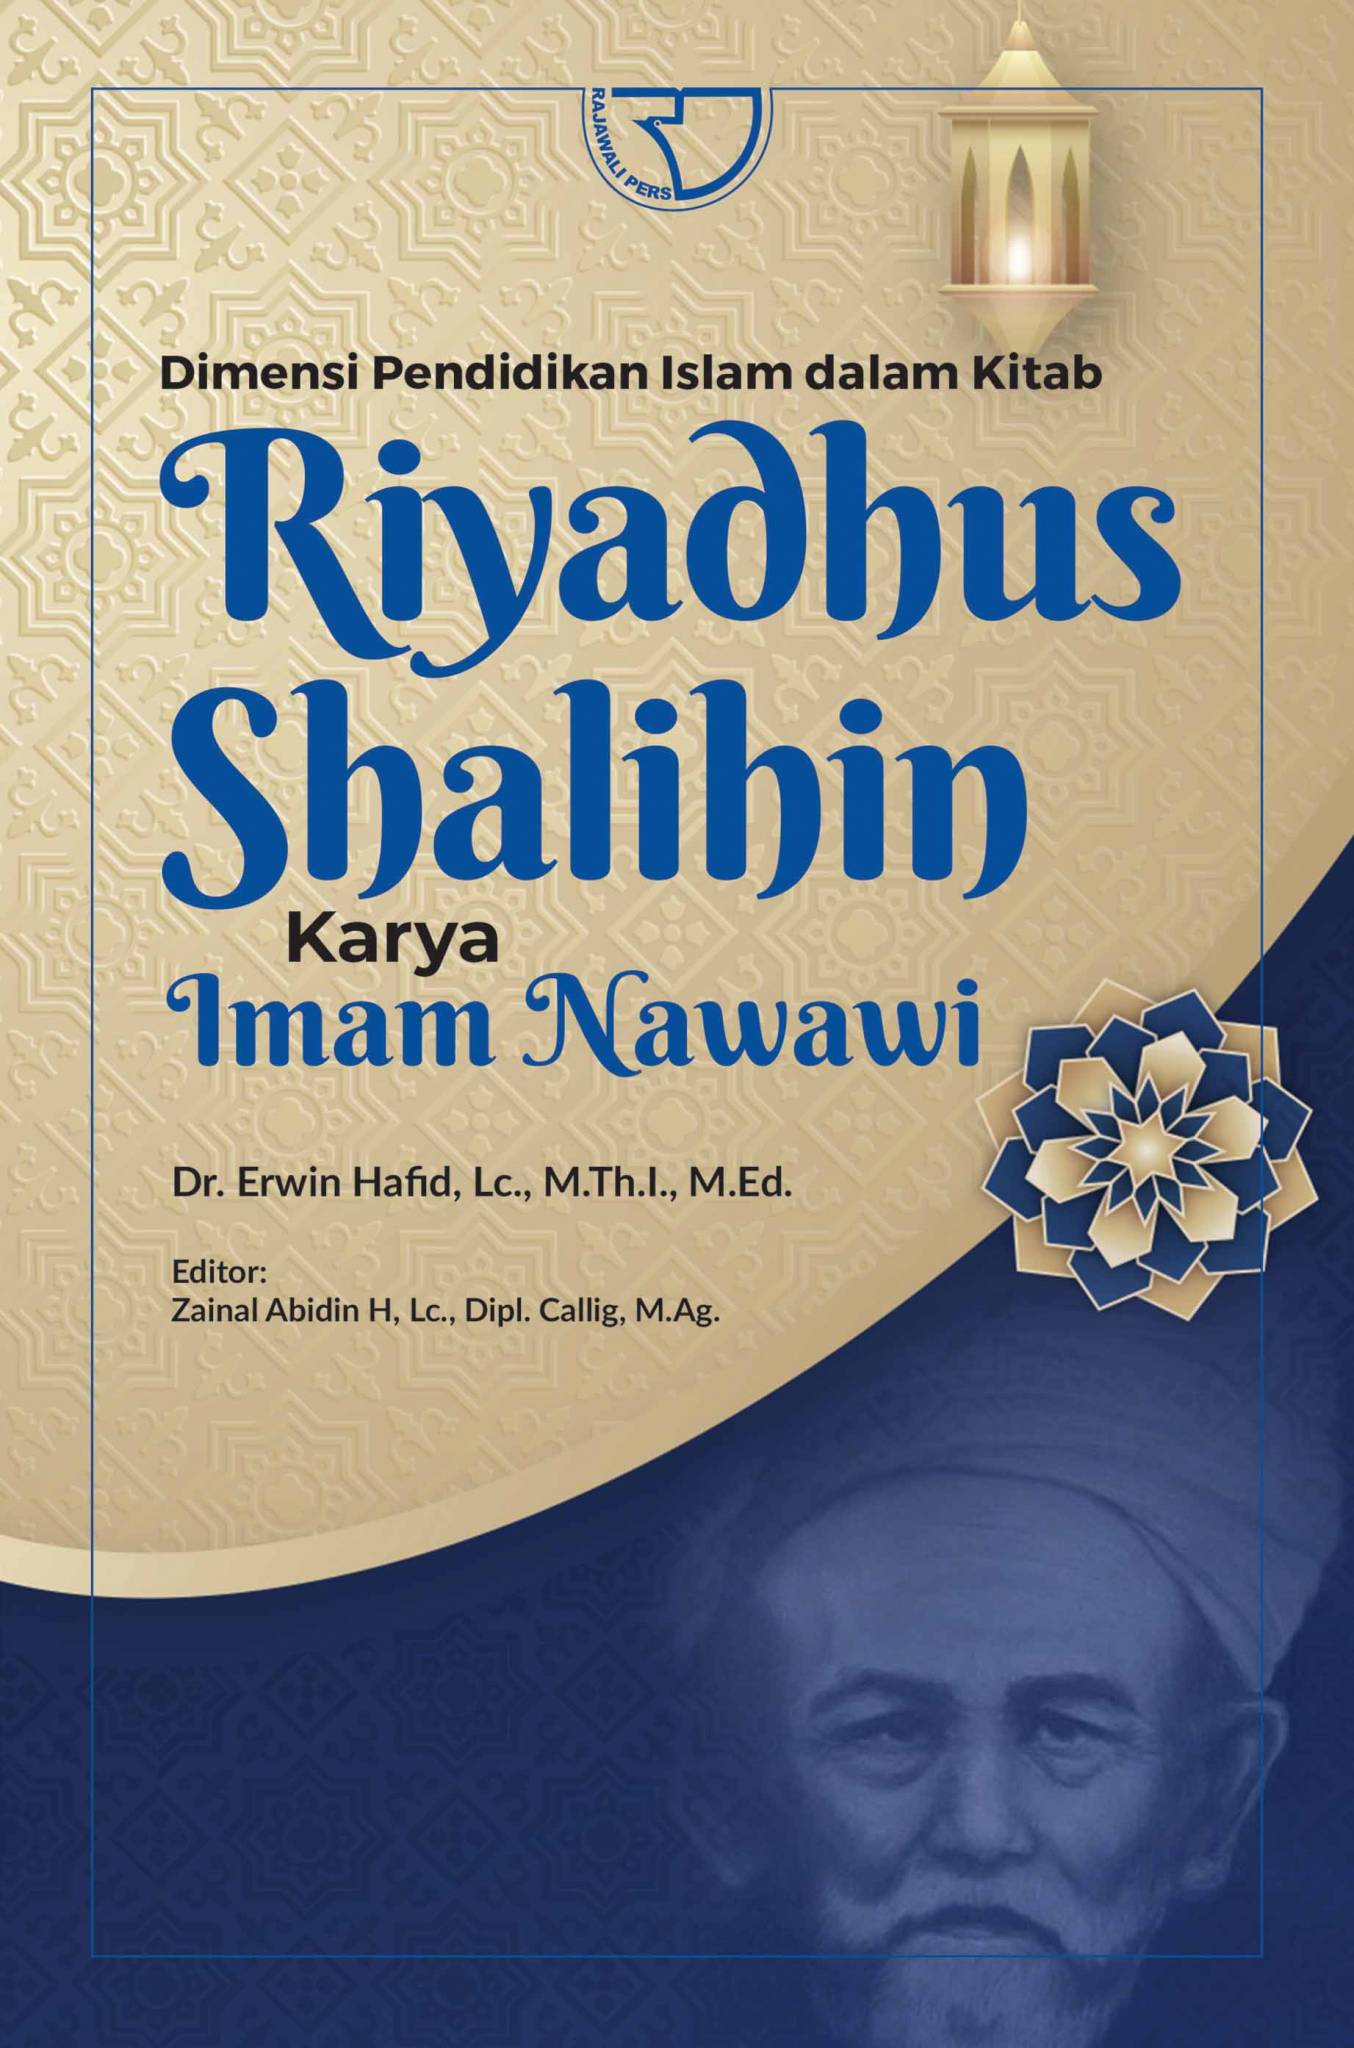 Dimensi Pendidikan Islam Dalam Kitab Riyadhus Shalihin Karya Imam